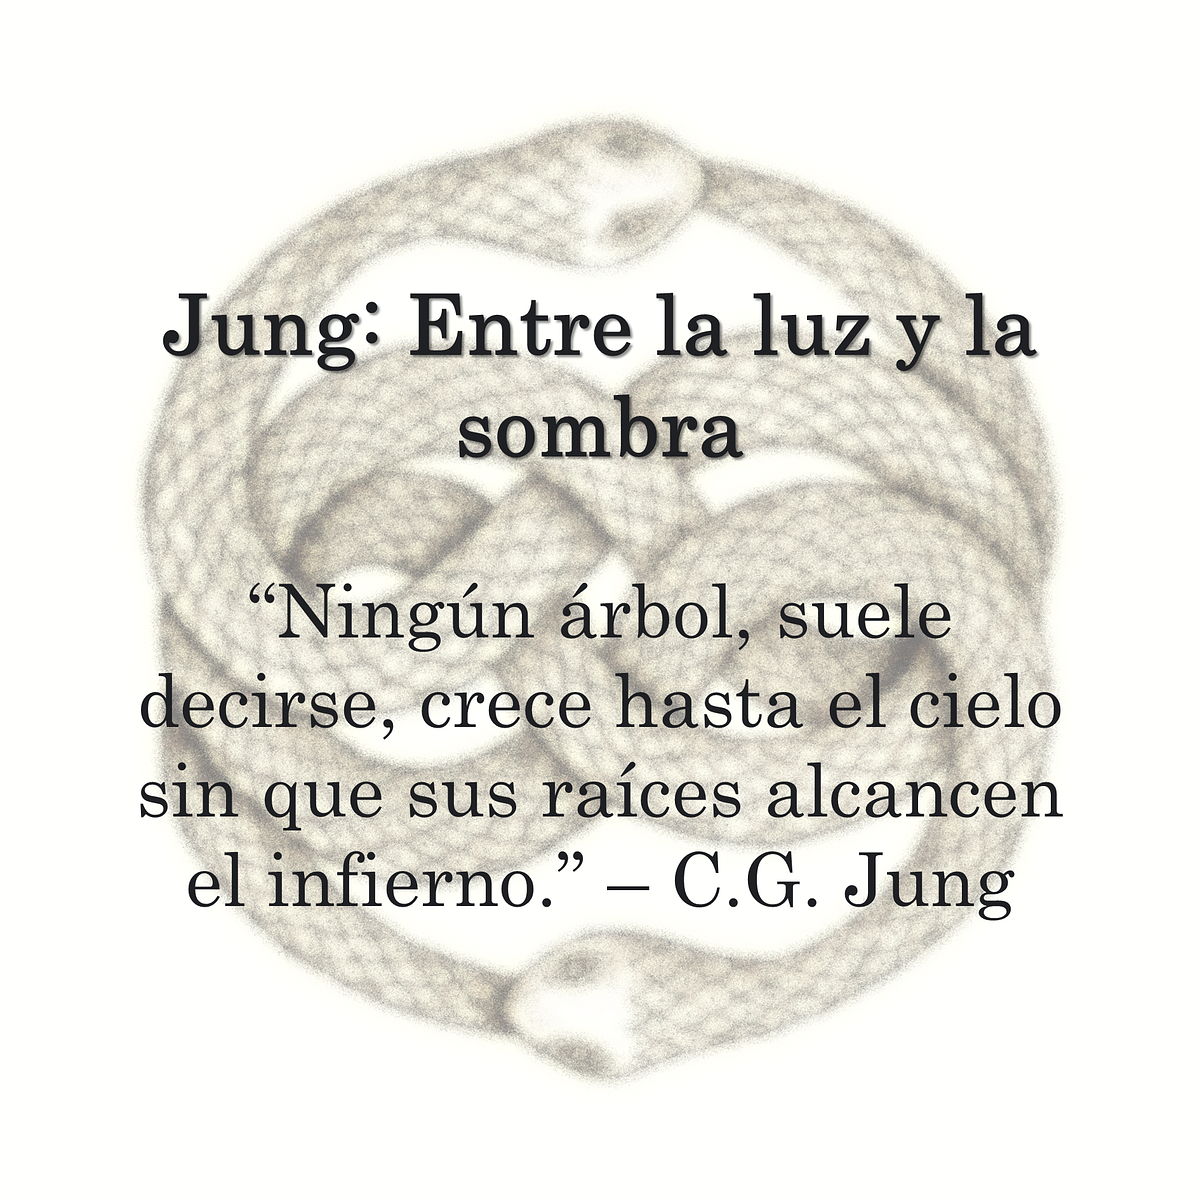 Carl Gustav Jung: Entre la luz y la sombra | by Eranos Equinoccial | Medium